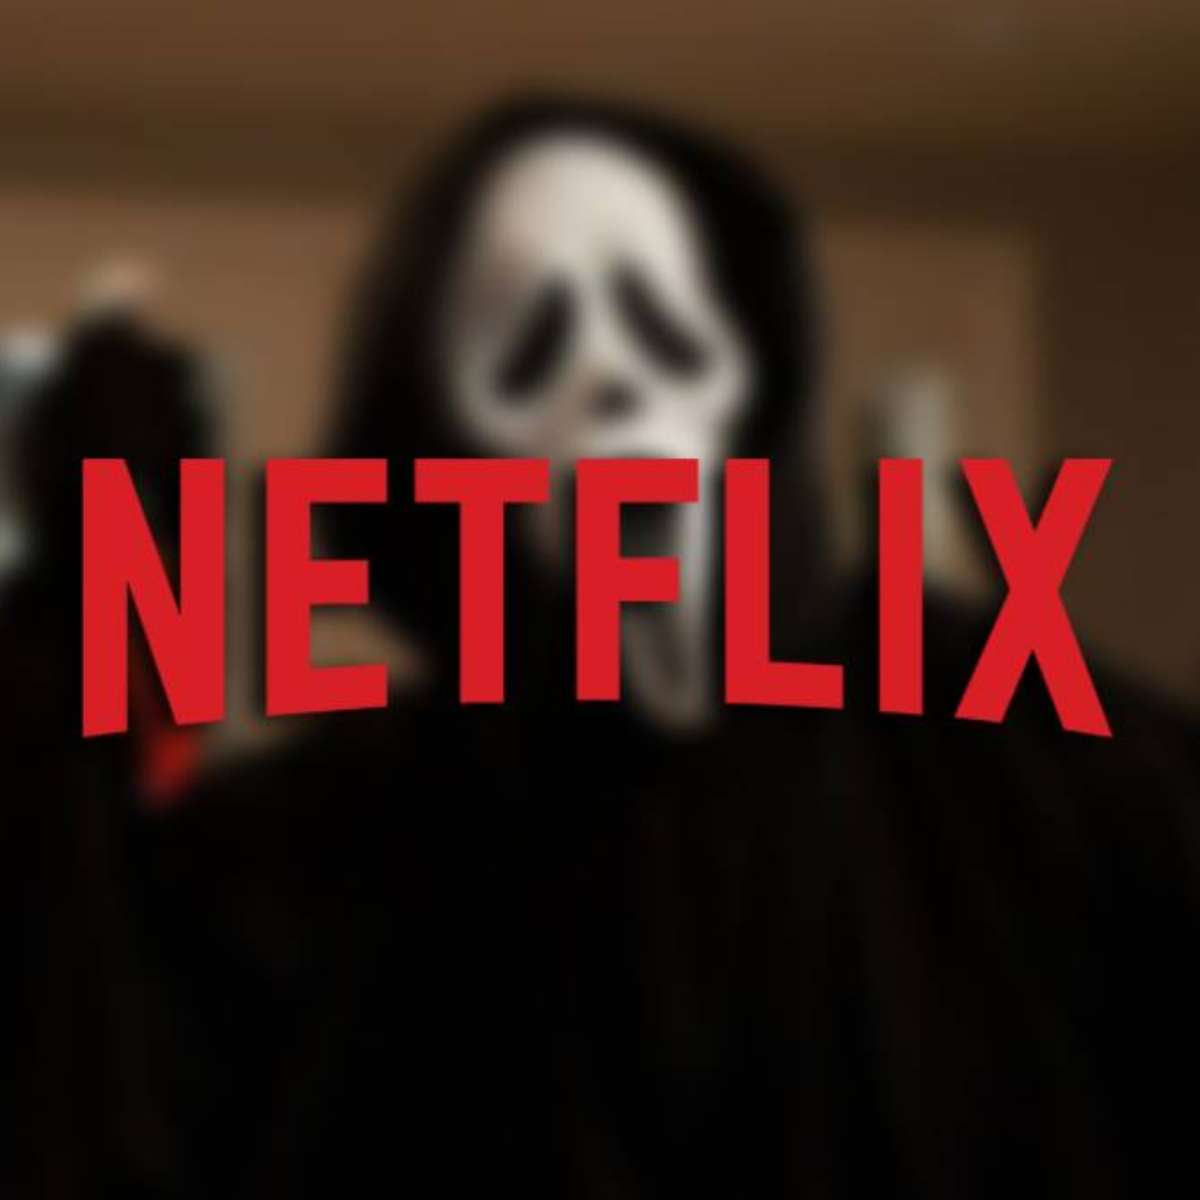 O que entra na Netflix esta semana? Veja os filmes e as séries